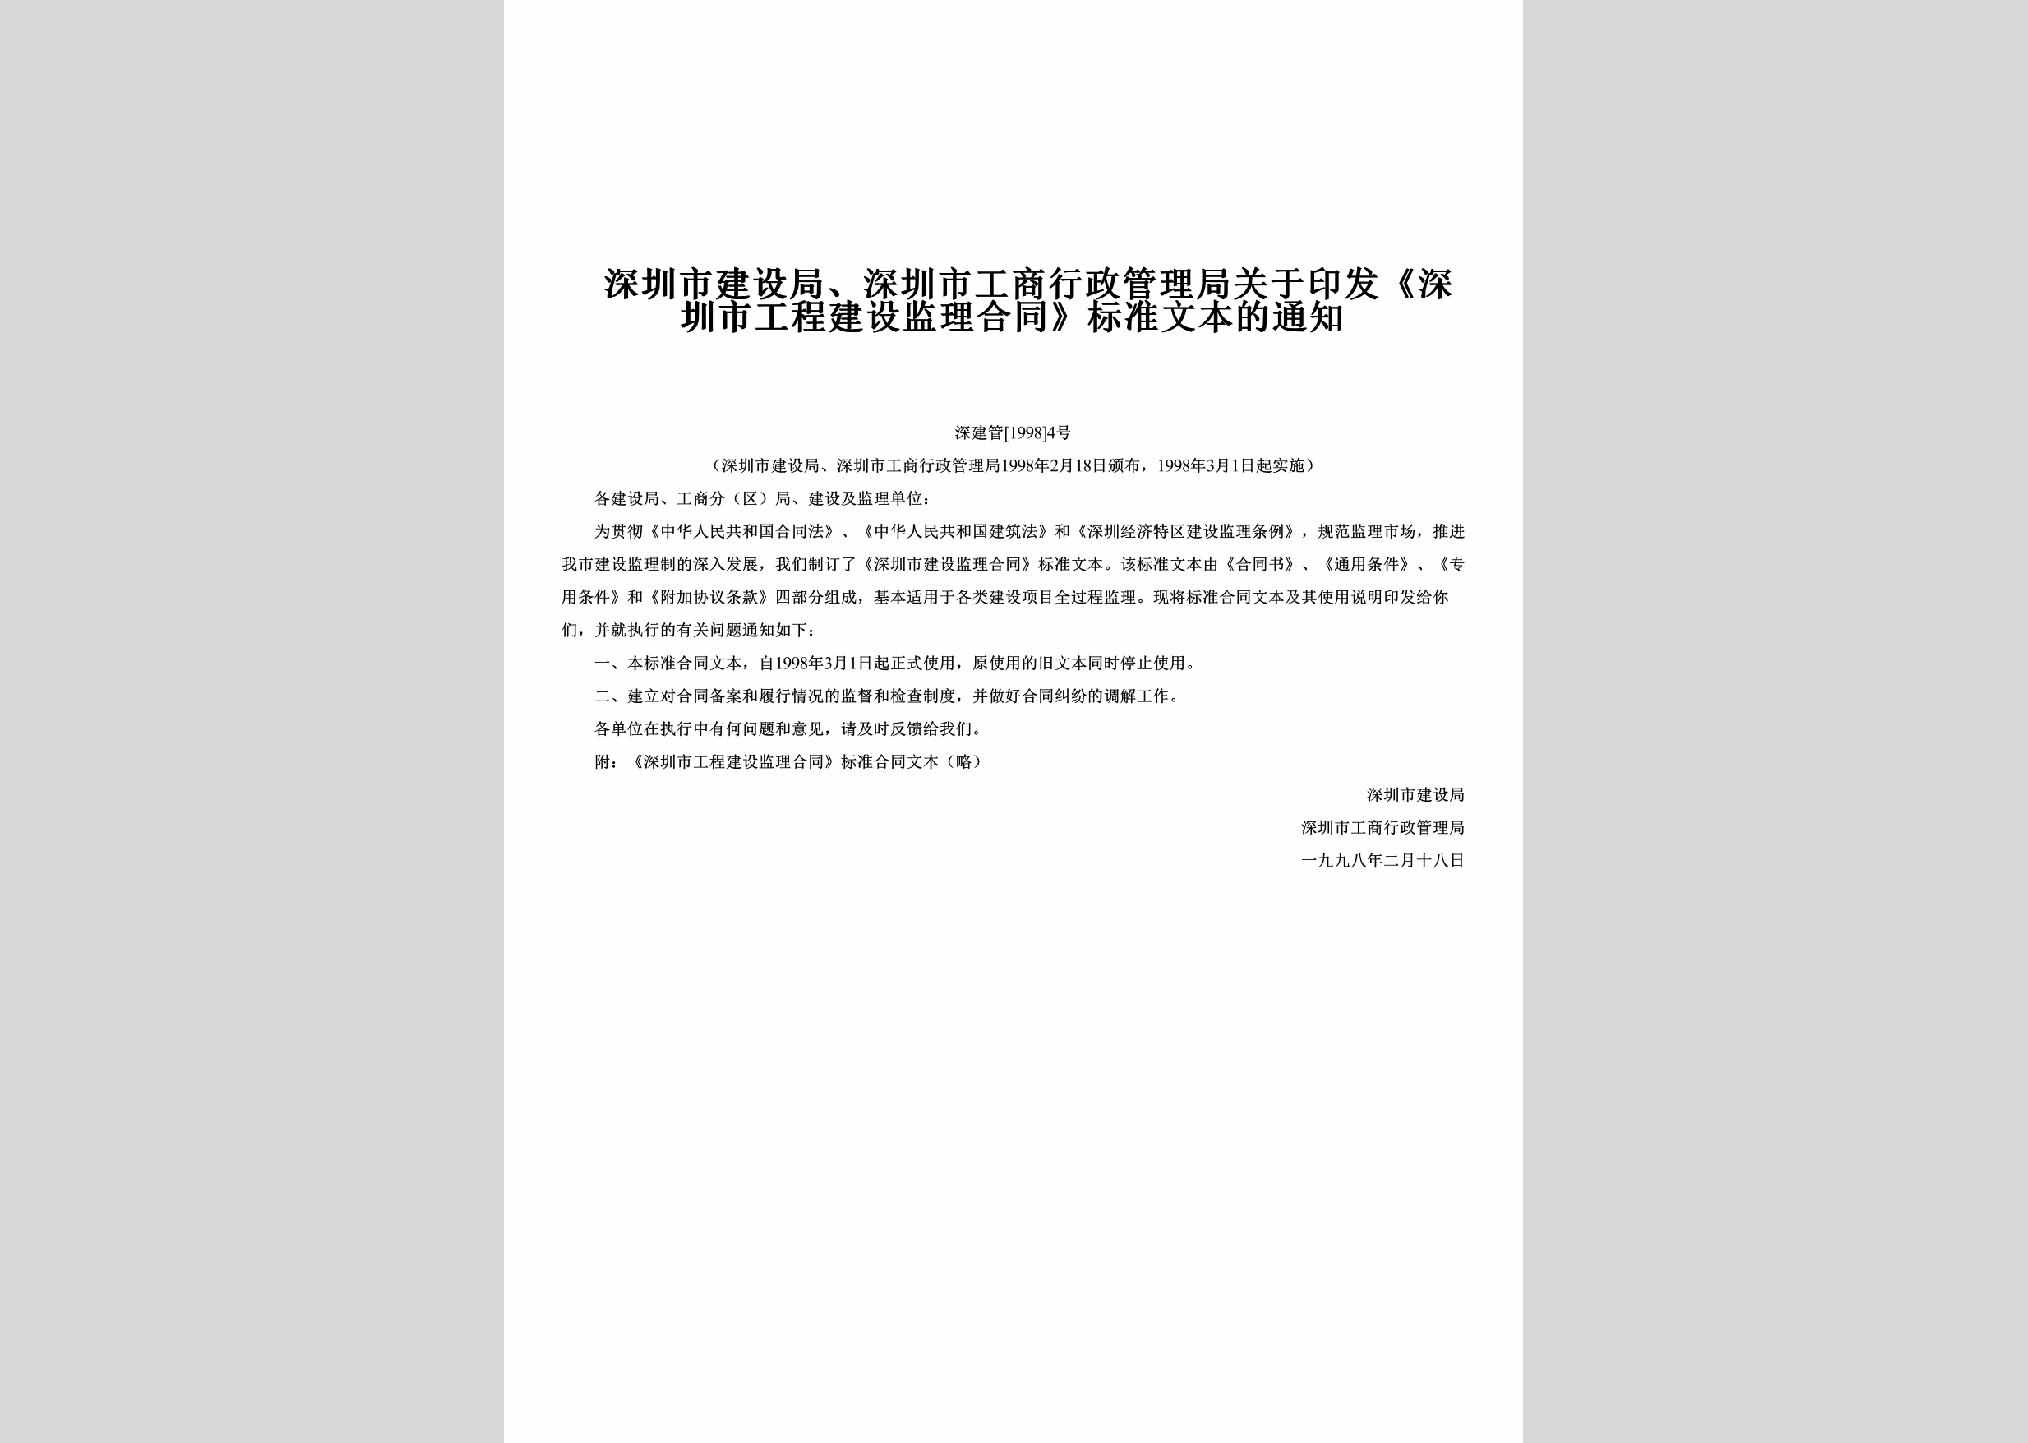 深建管[1998]4号：关于印发《深圳市工程建设监理合同》标准文本的通知